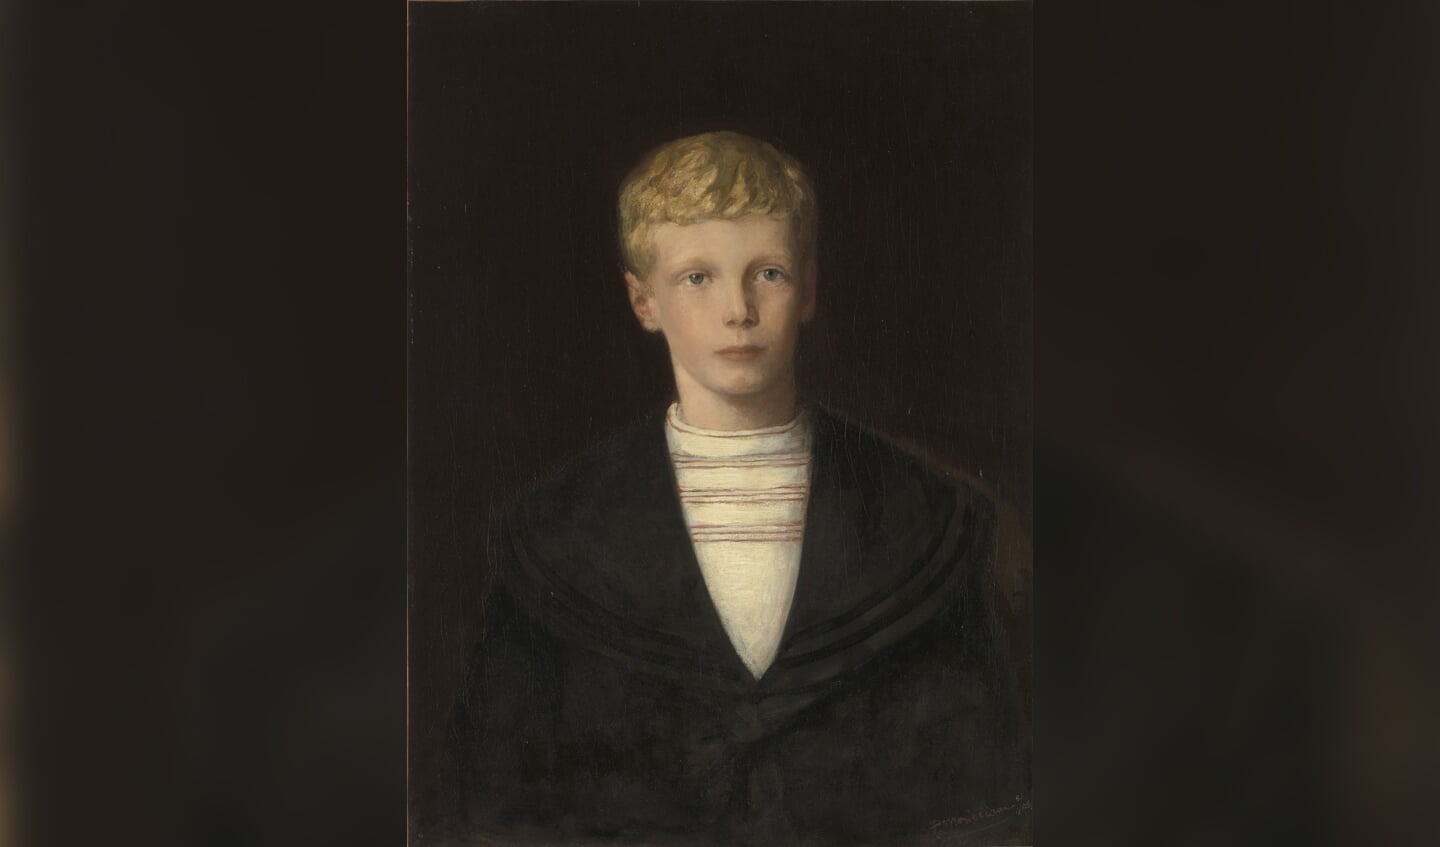 Piet Mondriaan, Portret van J.PG. Hulshoff Pol, 1905. Collectie Gemeentemuseum Den Haag